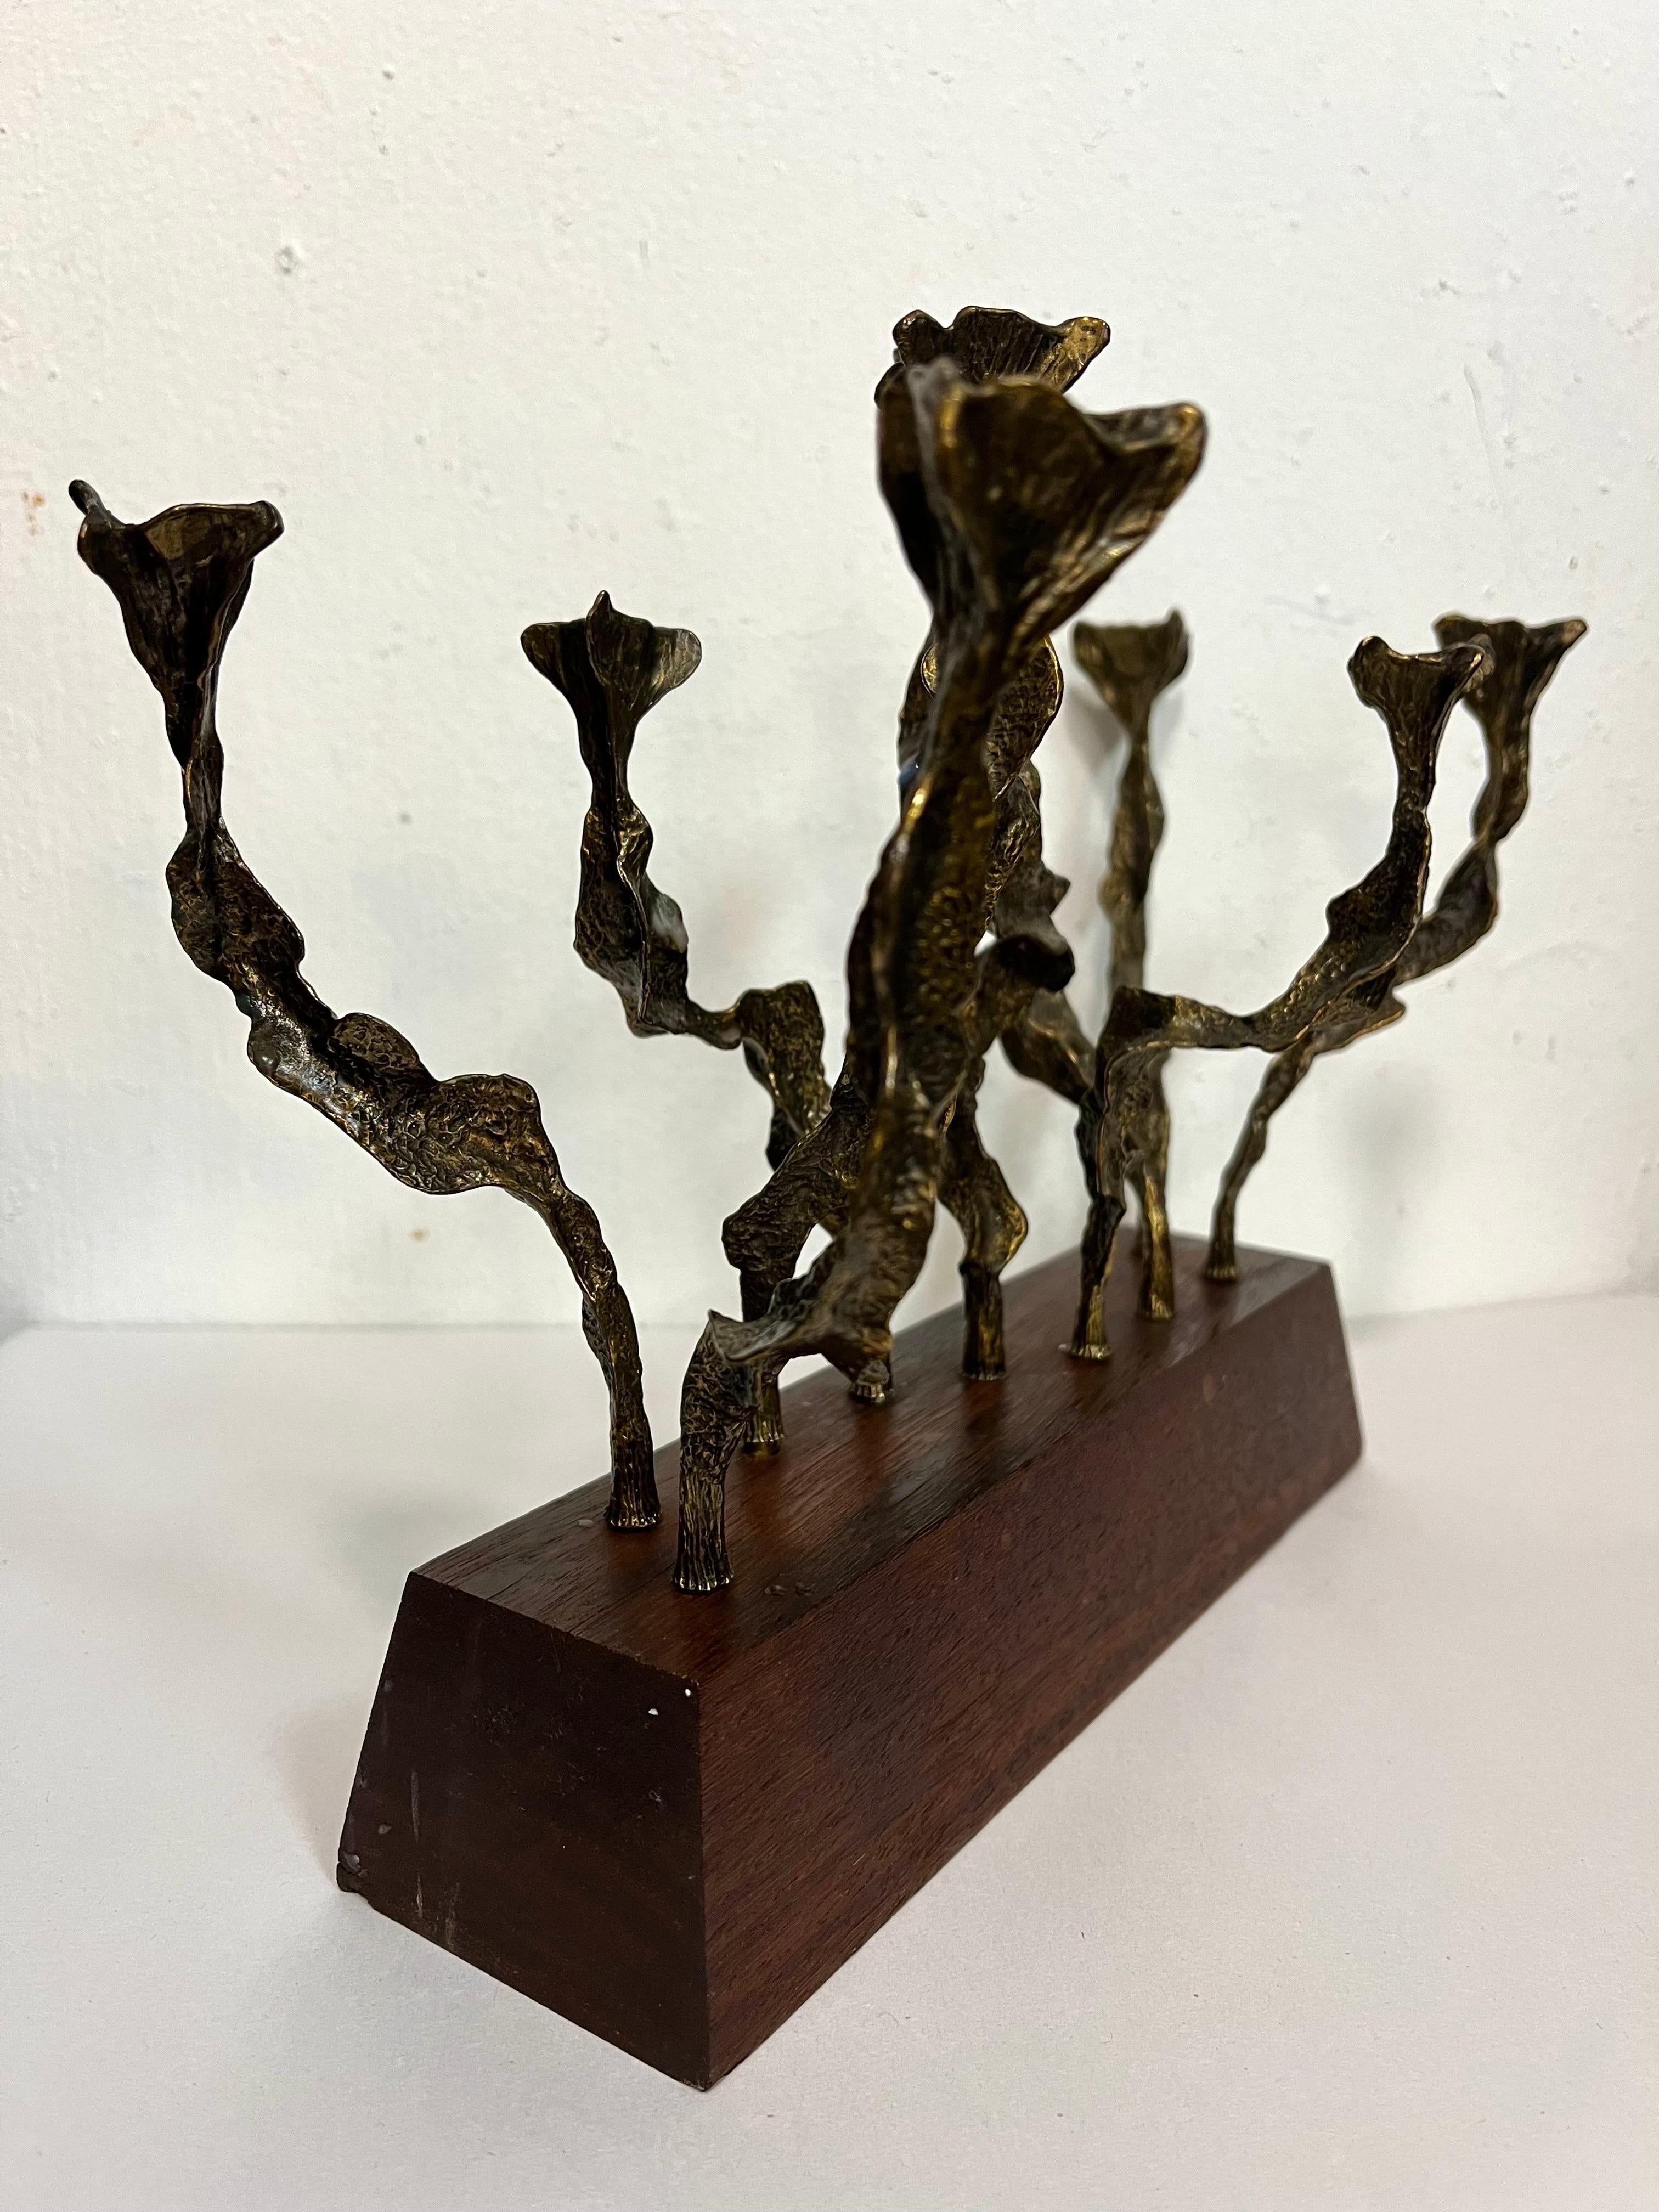 American Stunning Vintage Brutalist Sculptural Menorah of Bronze on Wood Base by Berman